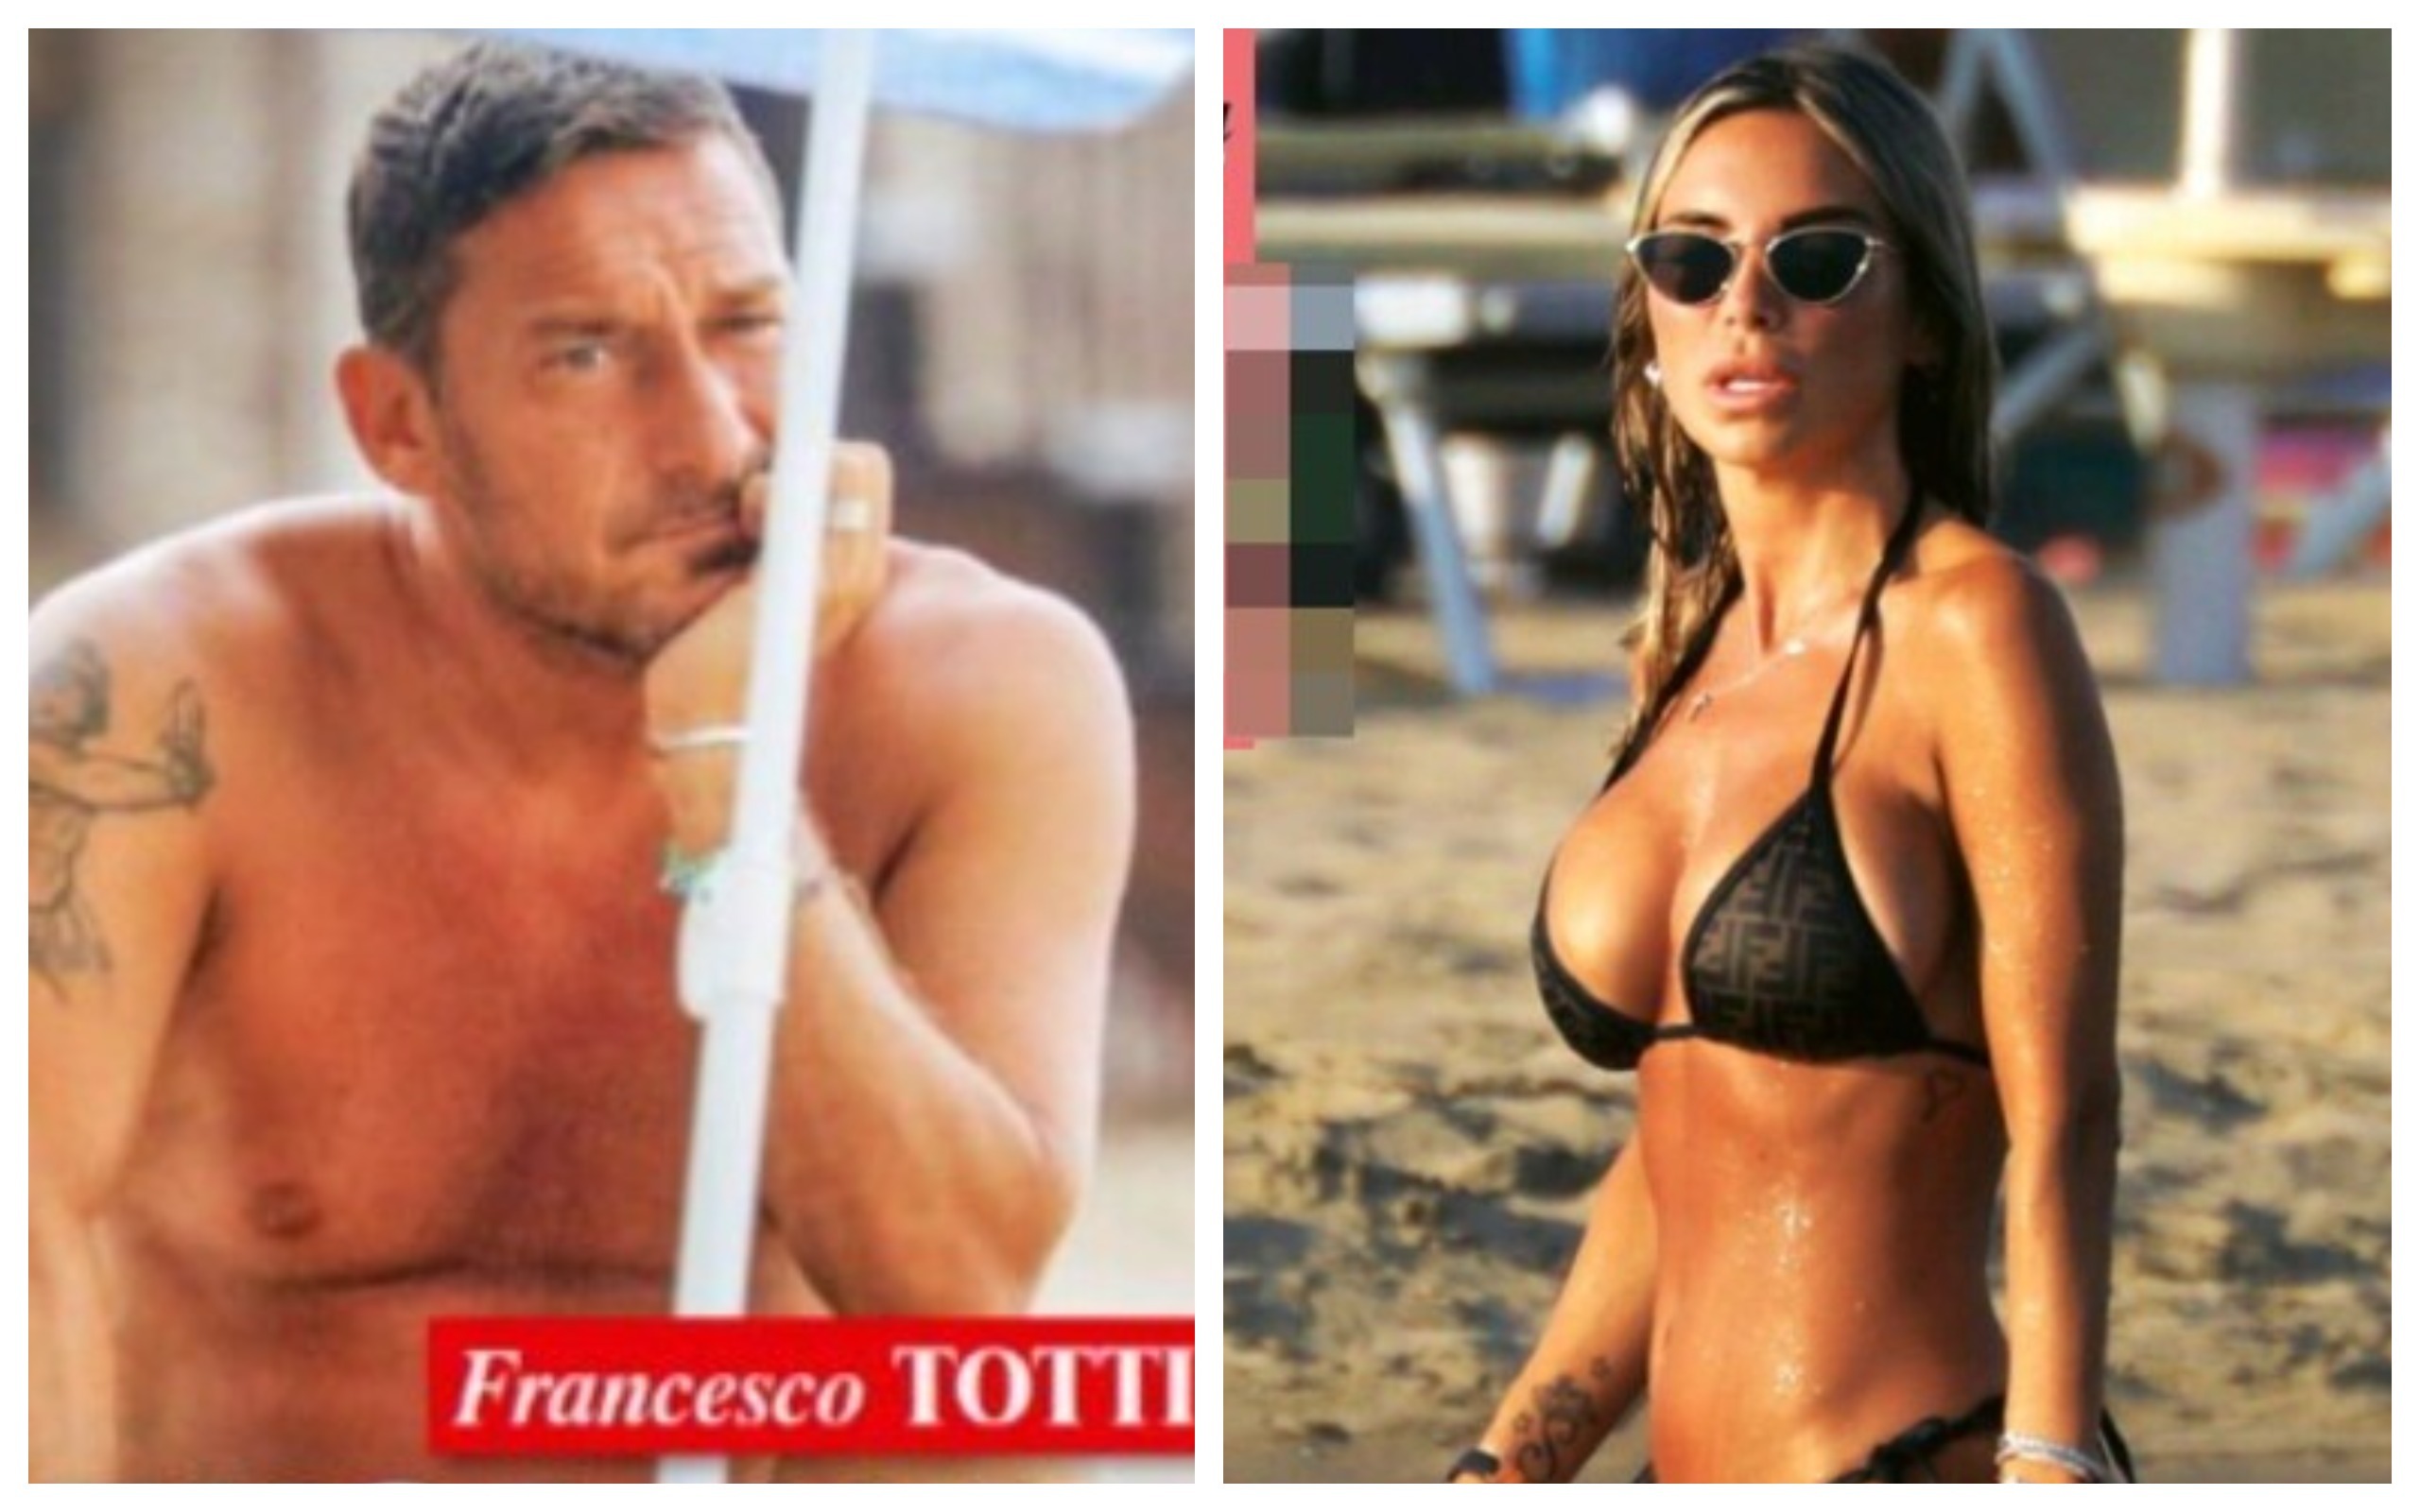 Francesco Totti e Noemi Bocchi aspettano un figlio? La verità arriva da “Chi”